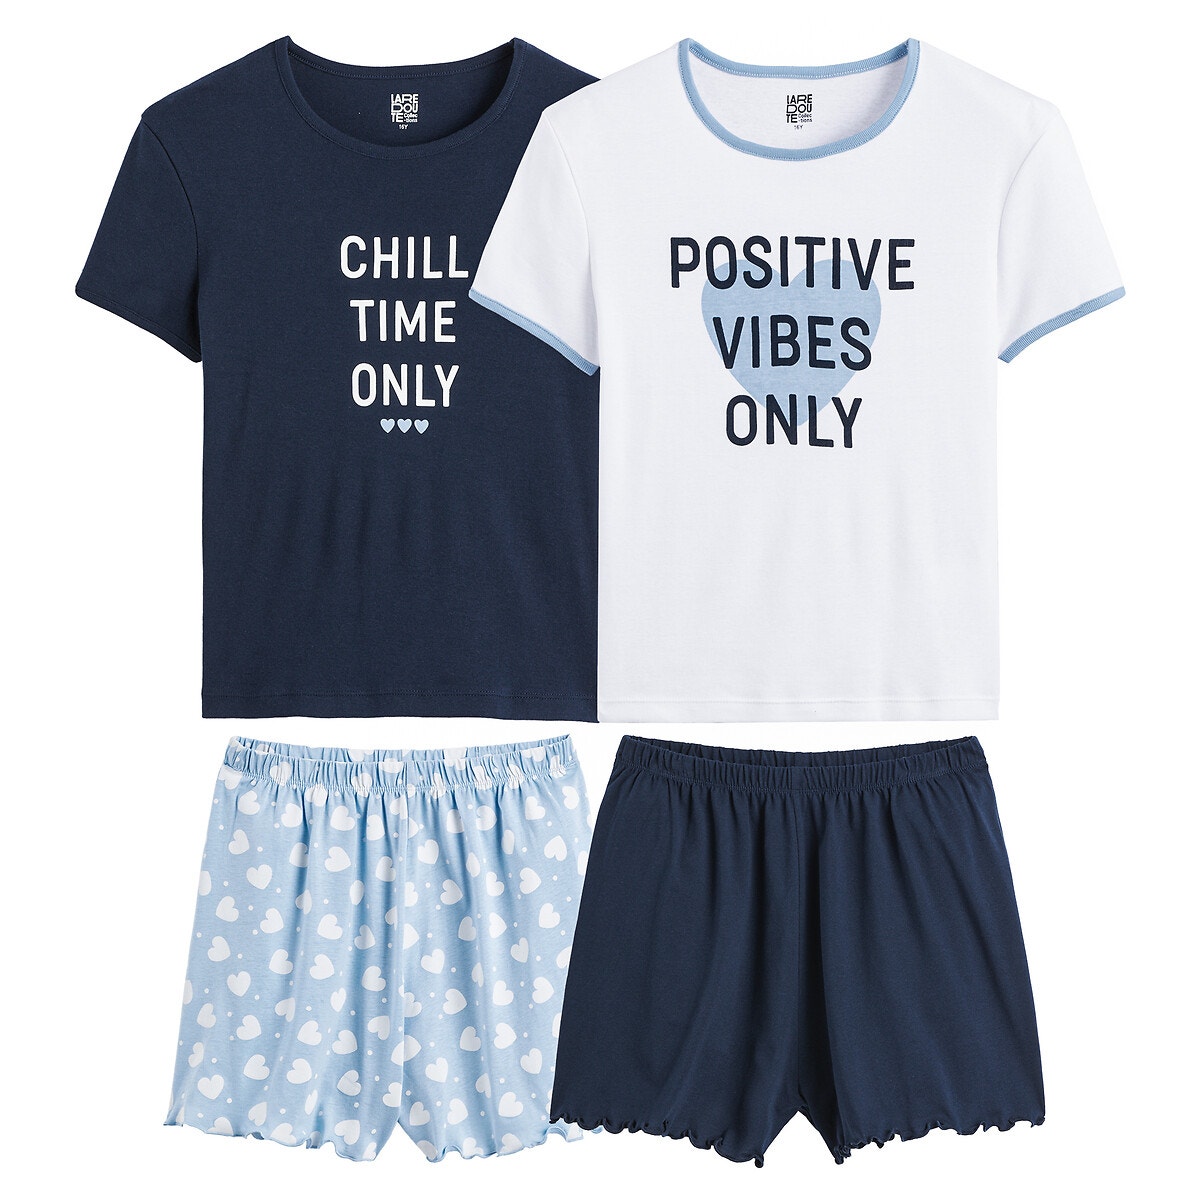 Μόδα > Παιδικά > Κορίτσι > Πιτζάμες, νυχτικά Σετ 2 πιτζάμες με μήνυμα